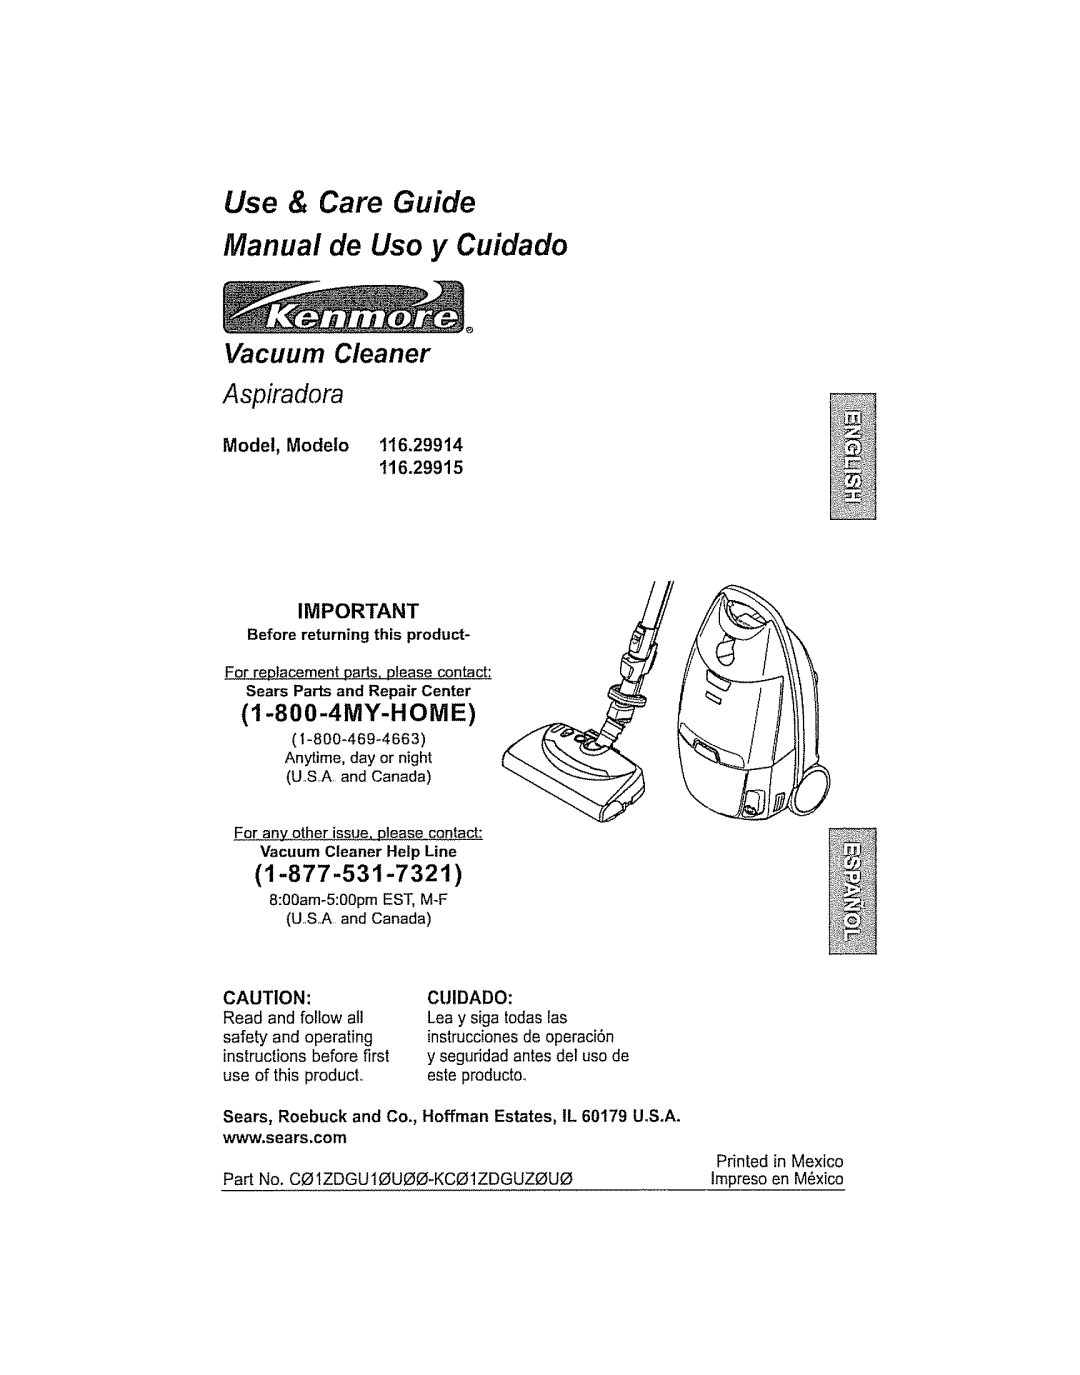 Kenmore 116.29914 manual Use & Care Guide Manual de Uso y Cuidado, Vacuum Cleaner Aspiradora, Model, Modelo t16.29914 